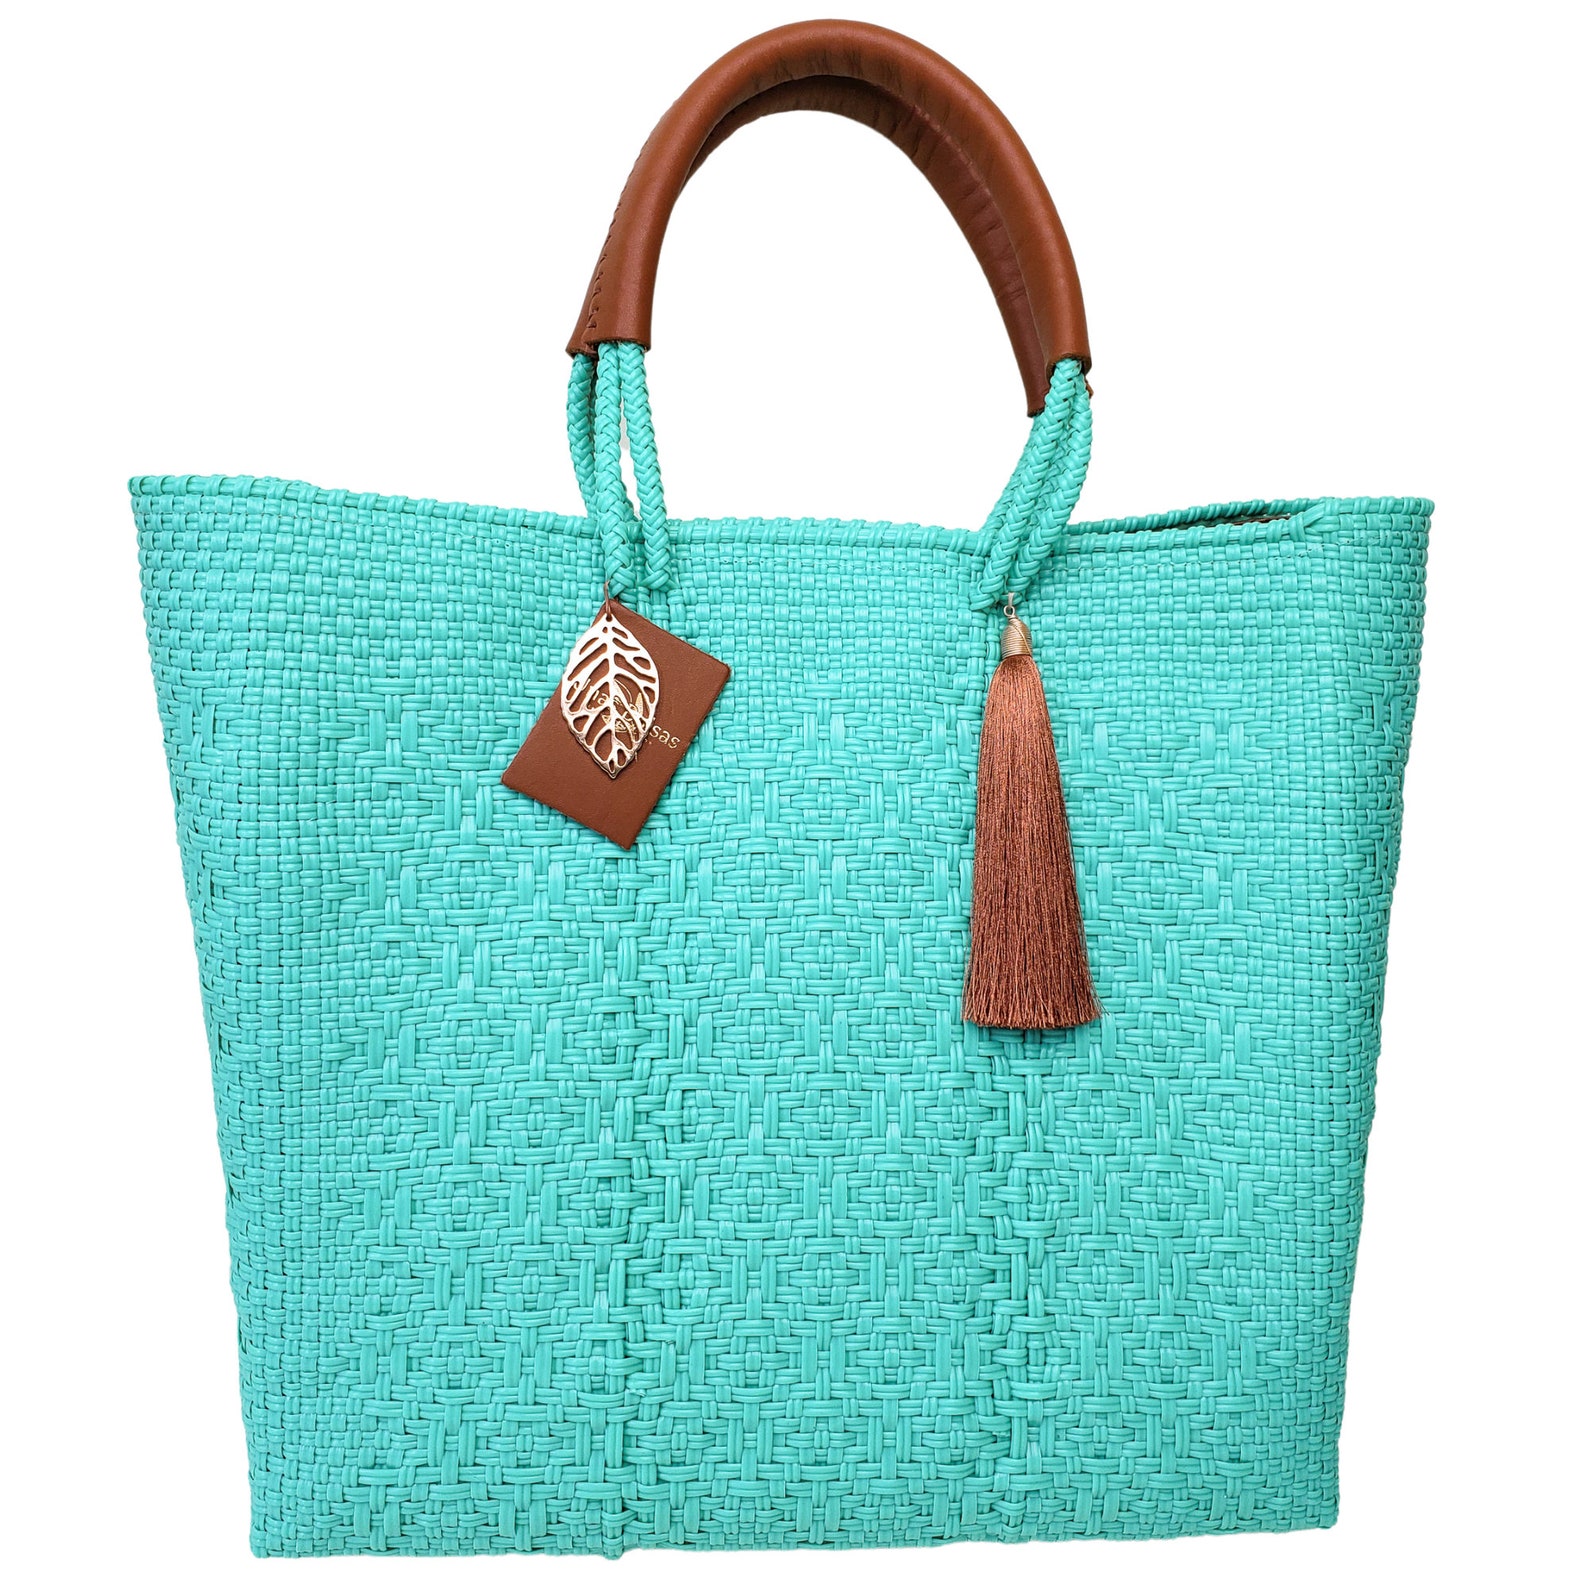 HANDMADE PLASTIC TOTE Bag Beach Bag Summer Bag Tote Bag | Etsy